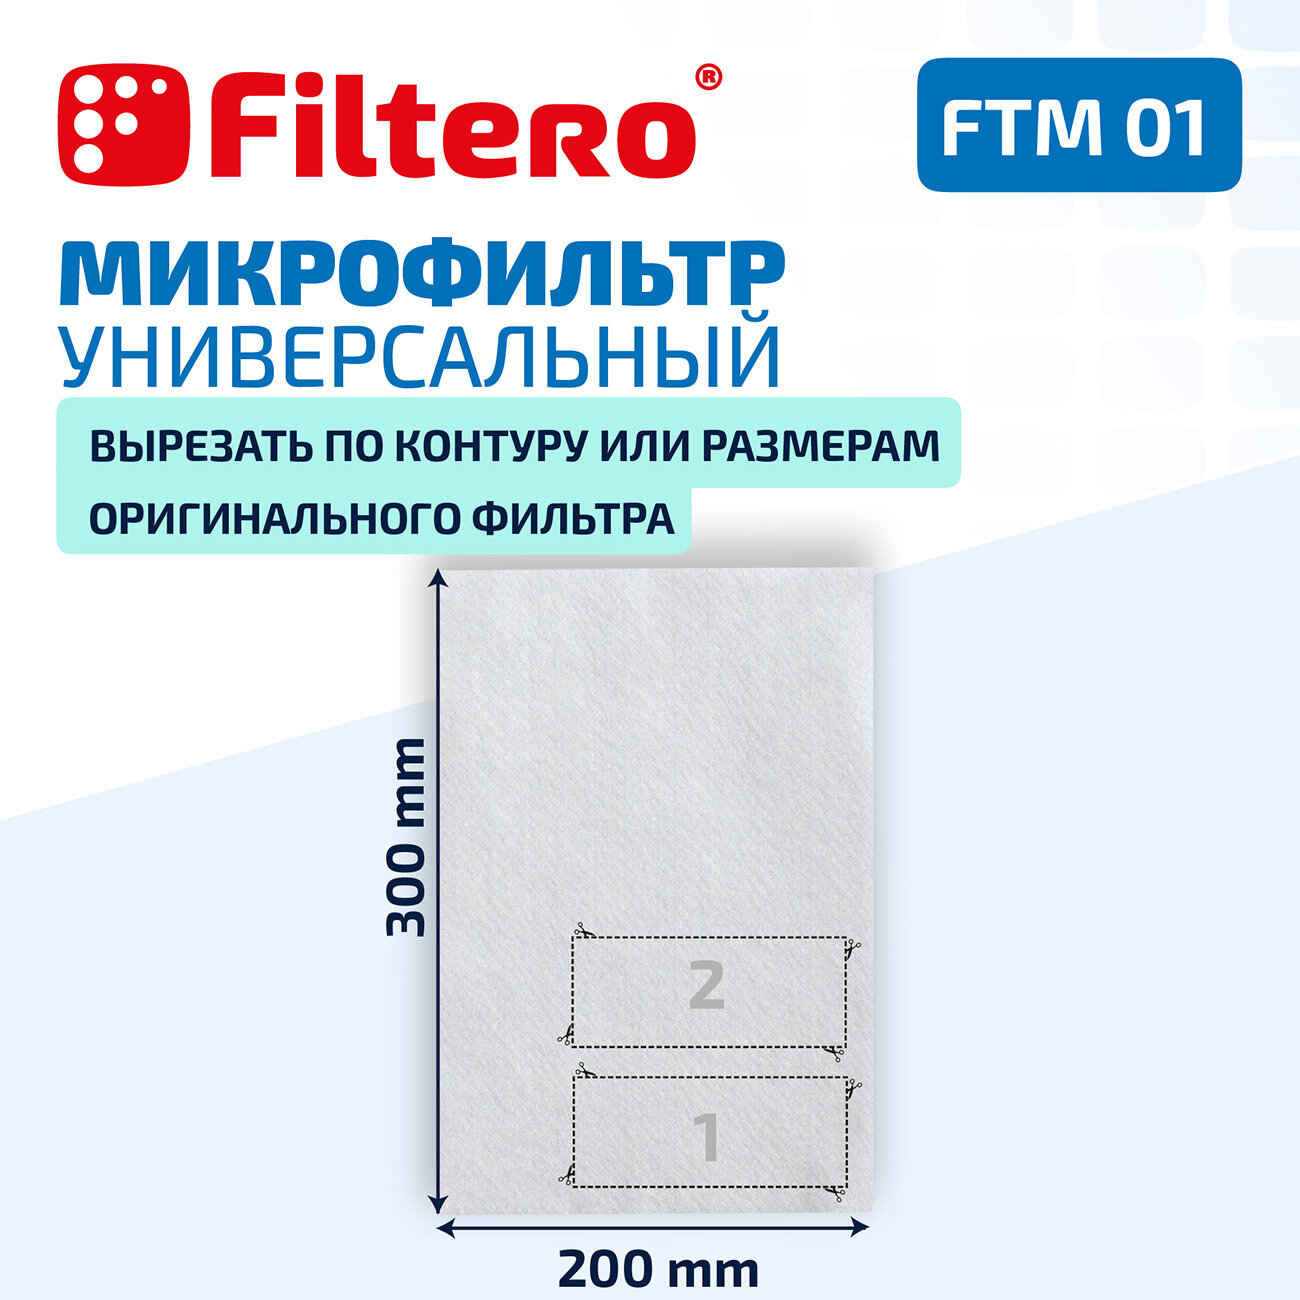 Микрофильтр Filtero - фото №3